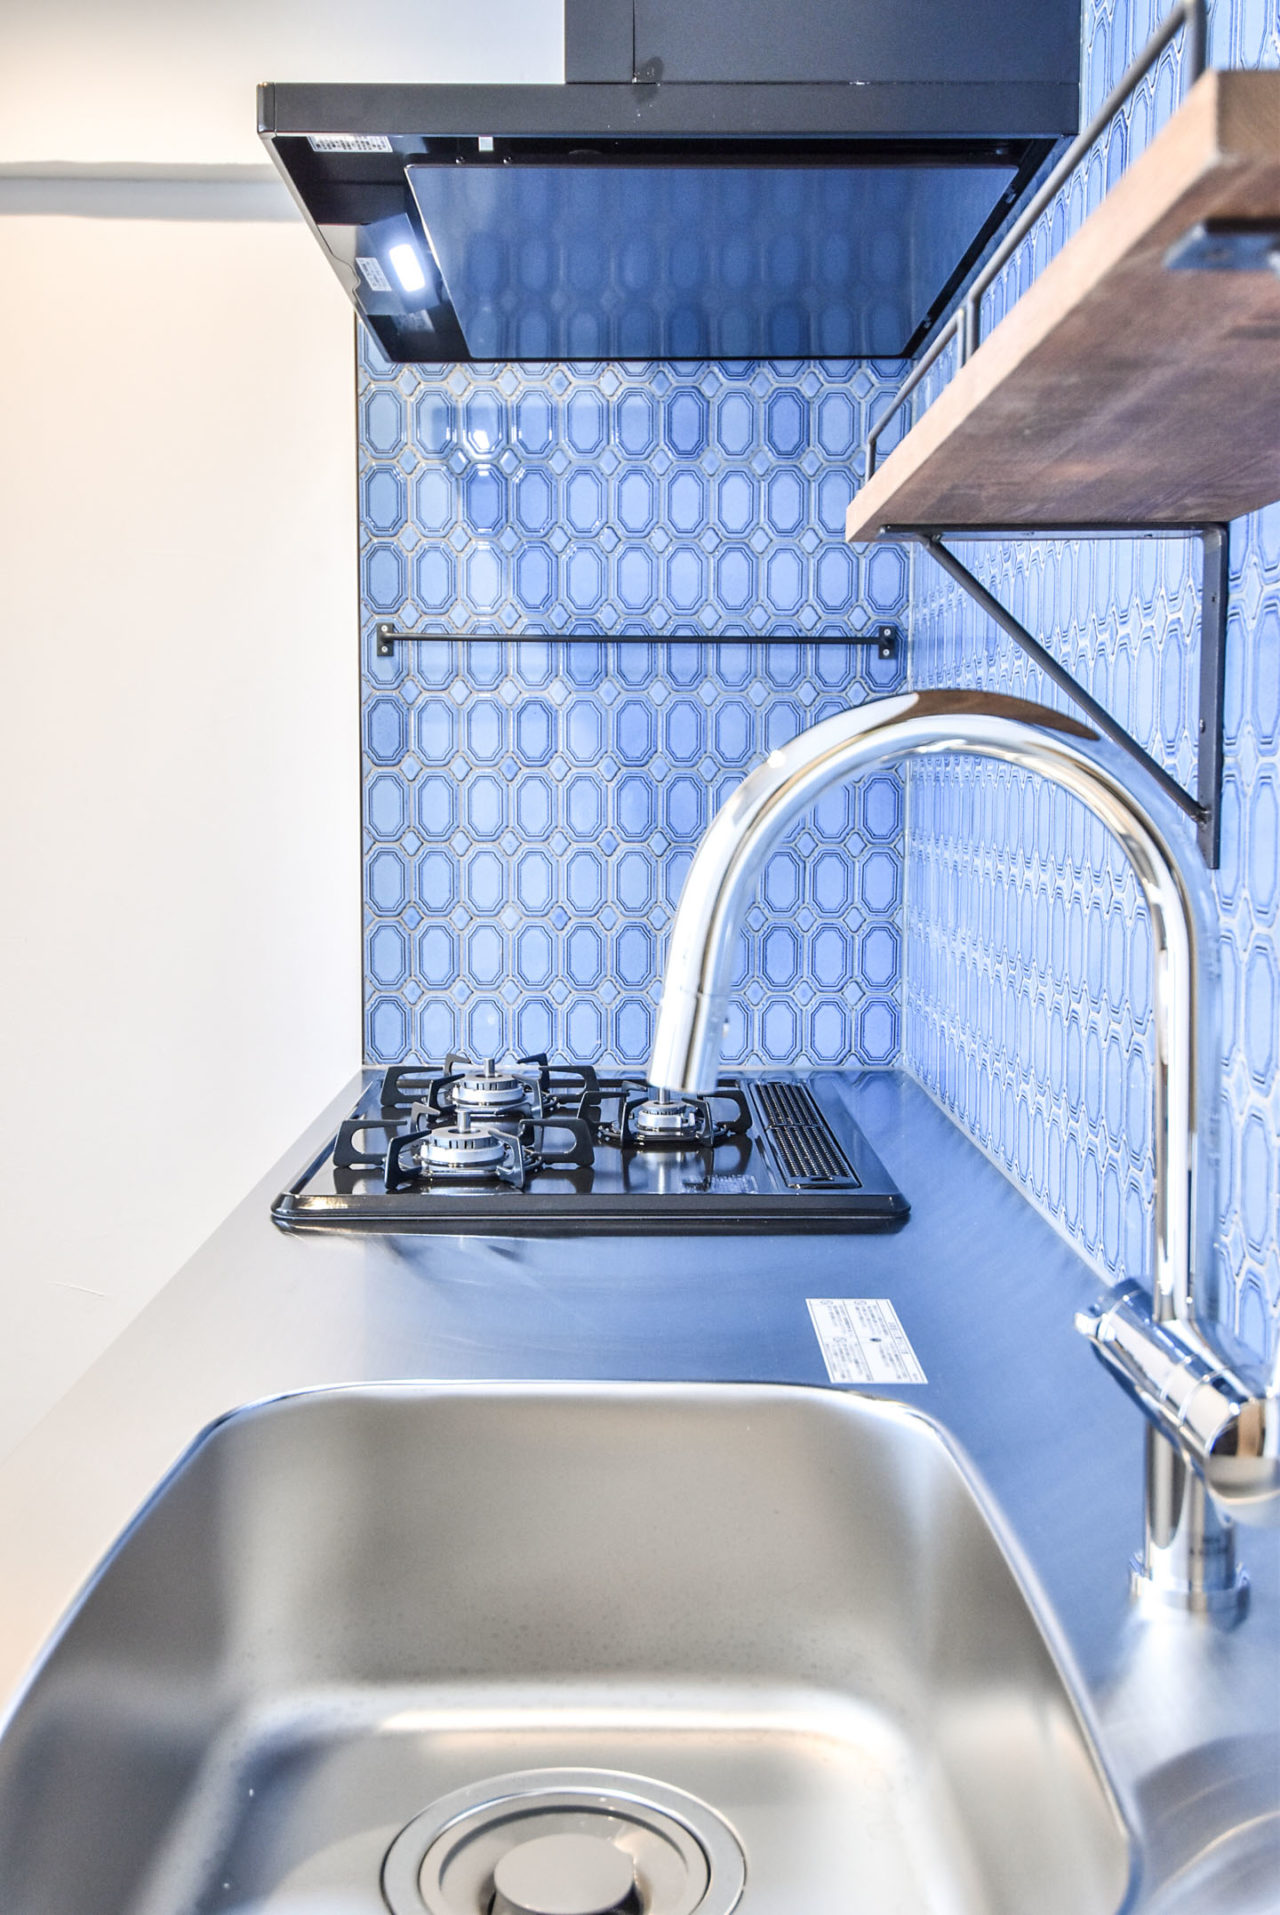 鮮やかなブルーのタイルの壁とグースネックのキッチン水栓